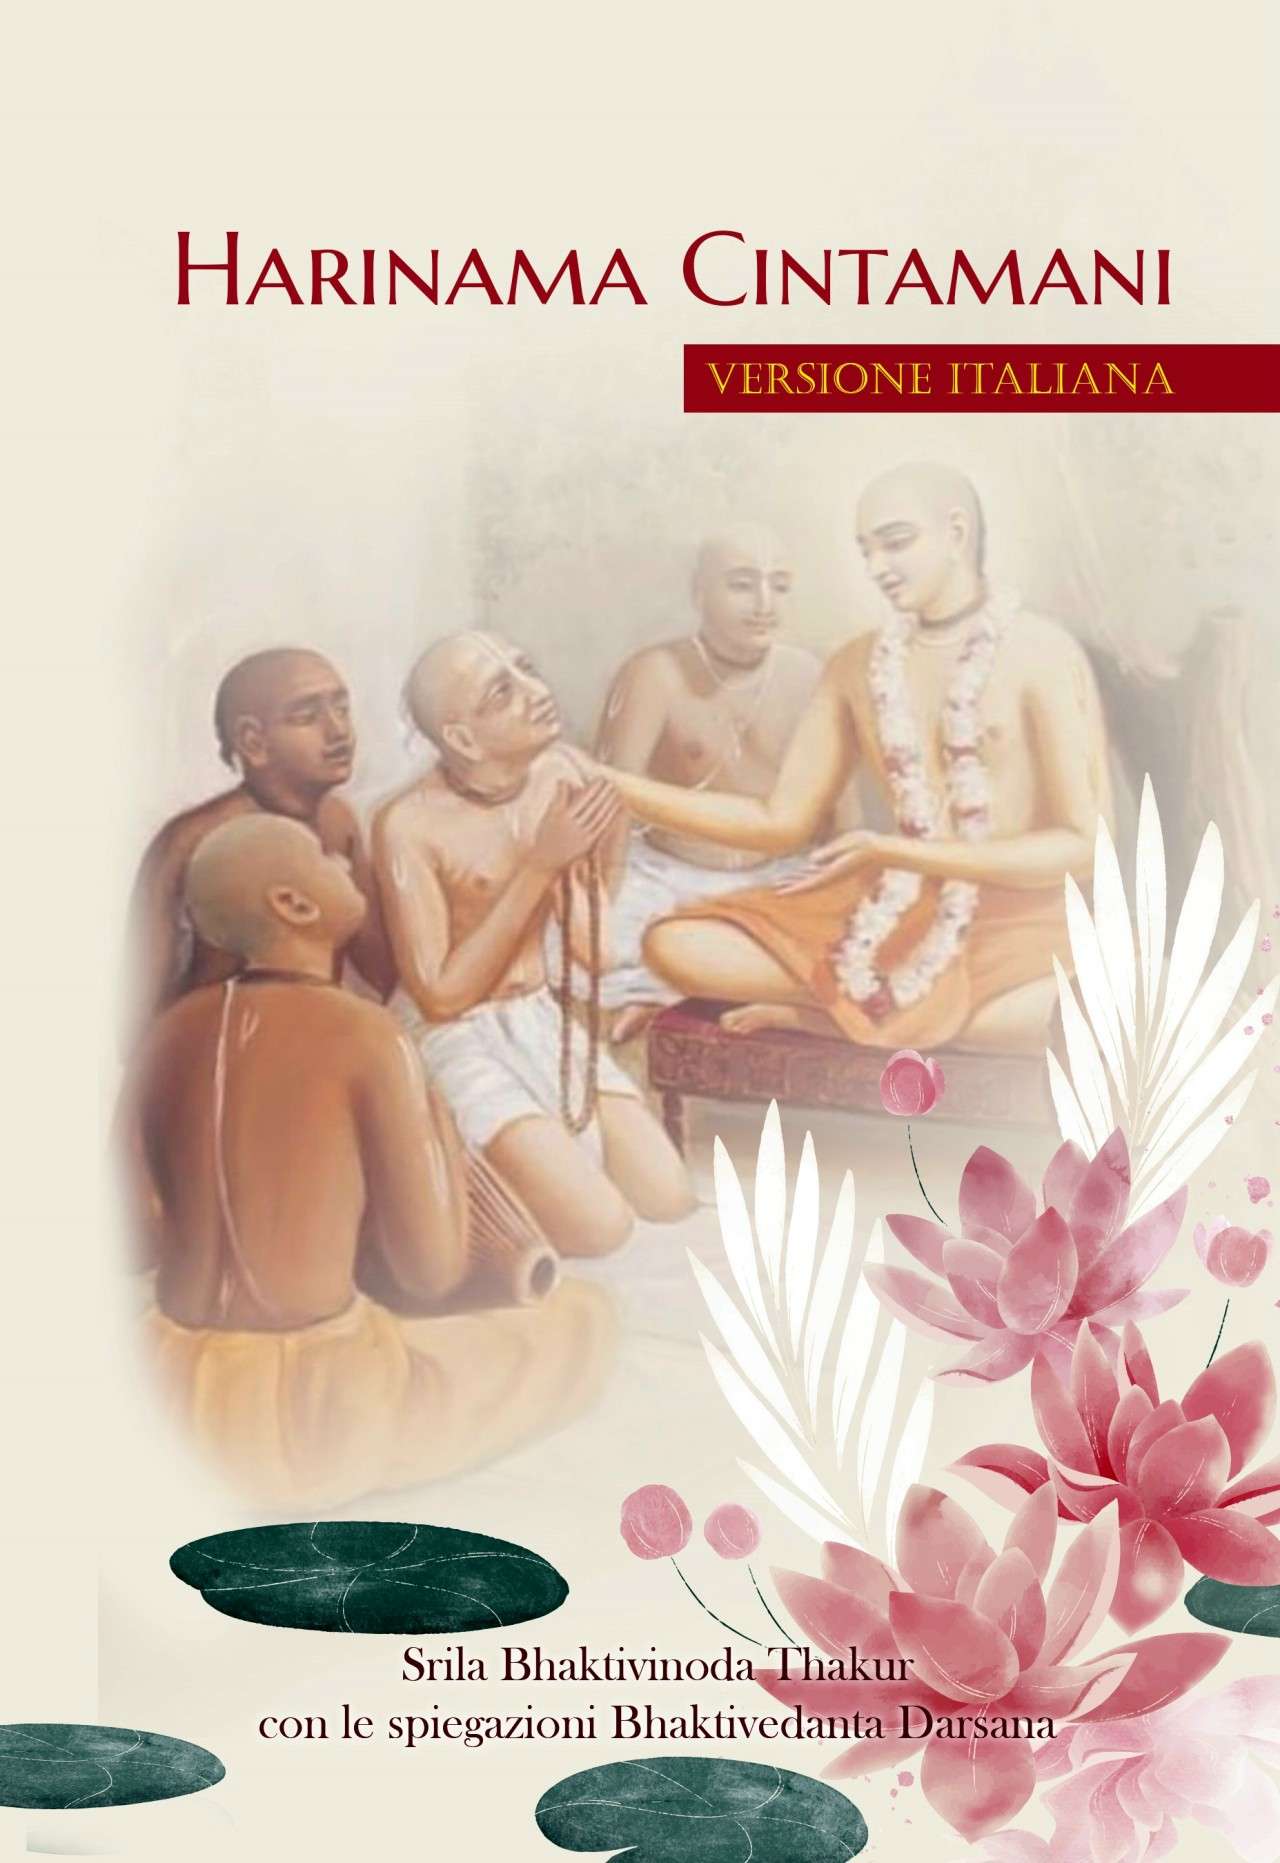 Harinama Cintamani, il libro di Bhaktivinode Thakura con spiegazioni - in ITALIANO